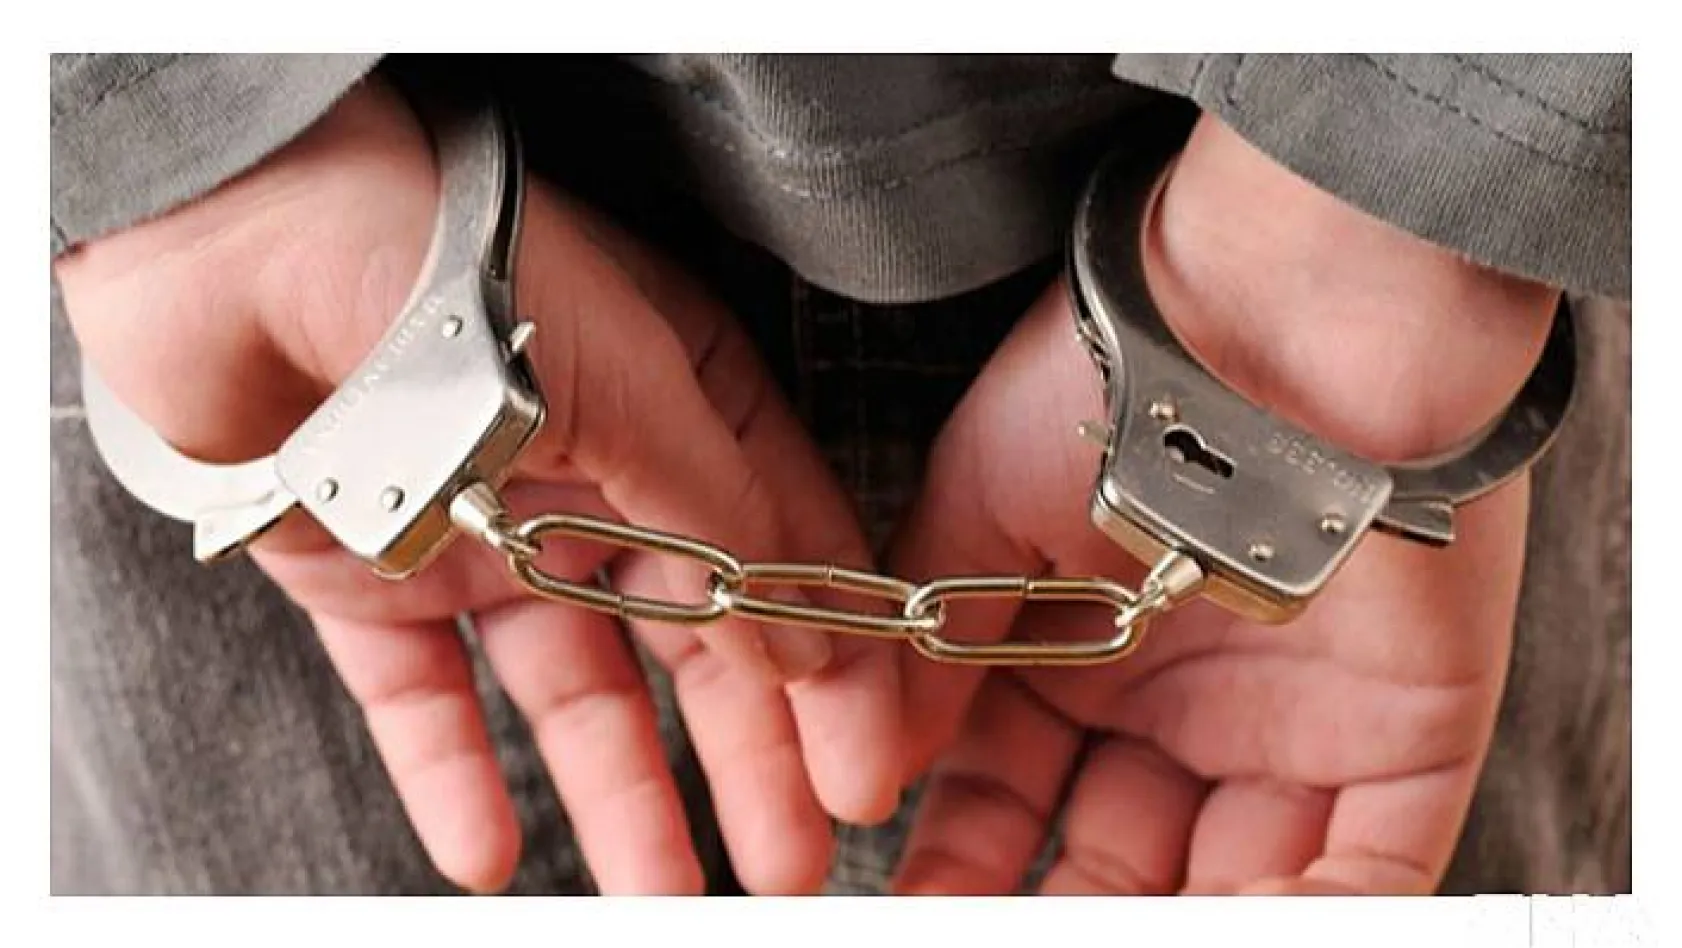 Kaçak alkol operasyonunda 53 şüpheliden 20'si tutuklanırken 33'ü serbest kaldı